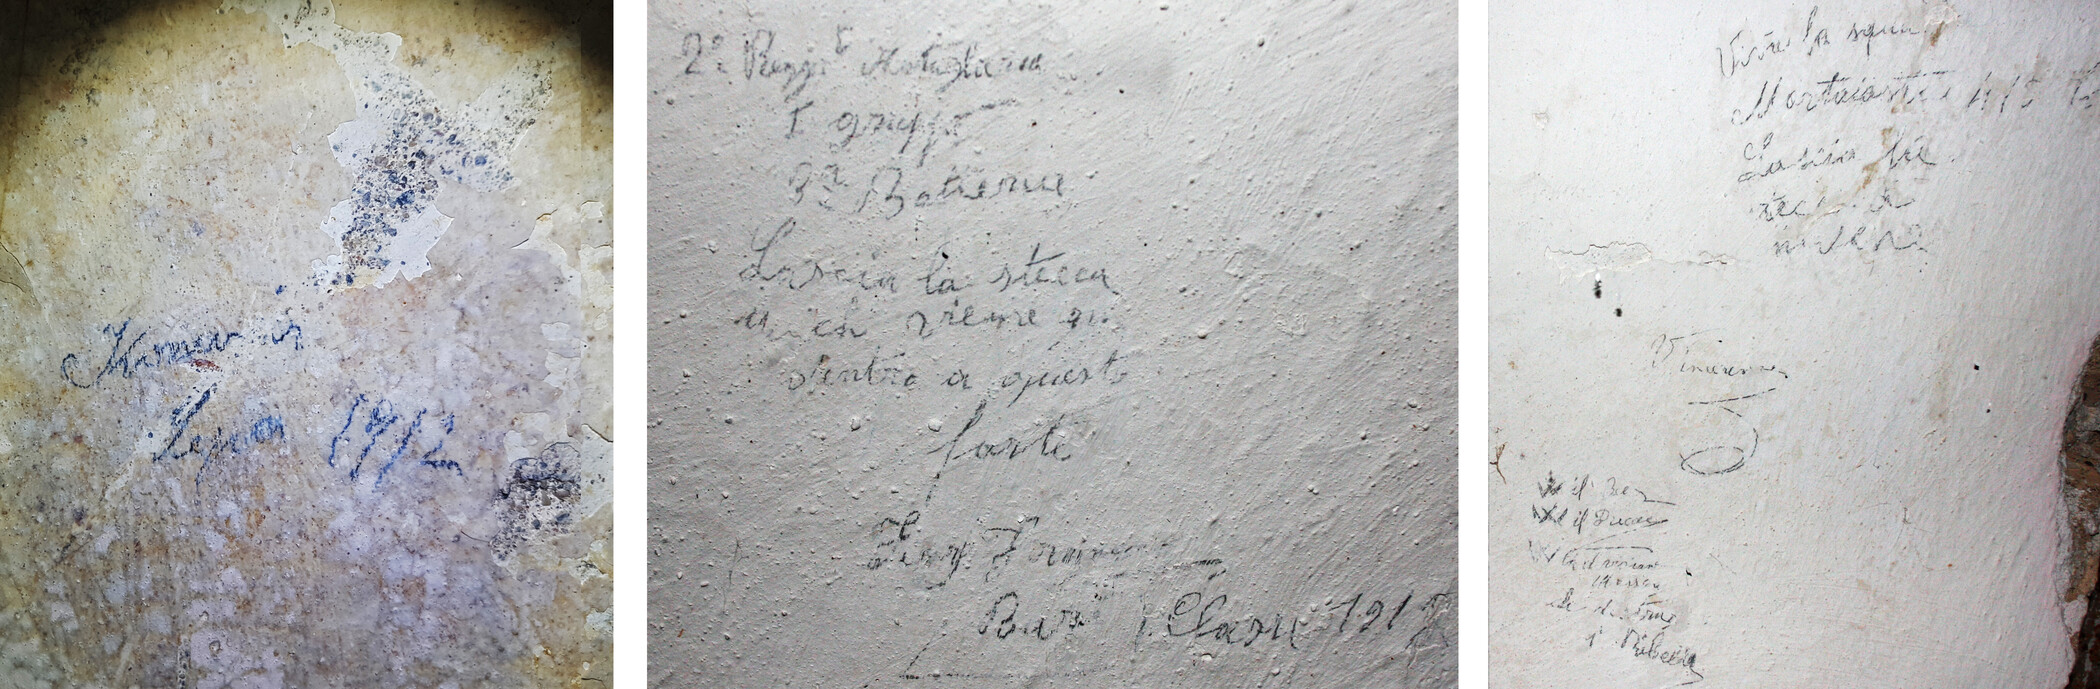 Goražda, Graffiti from soldiers of world war I and II (© OeAW-OeAI, L. Zabrana)